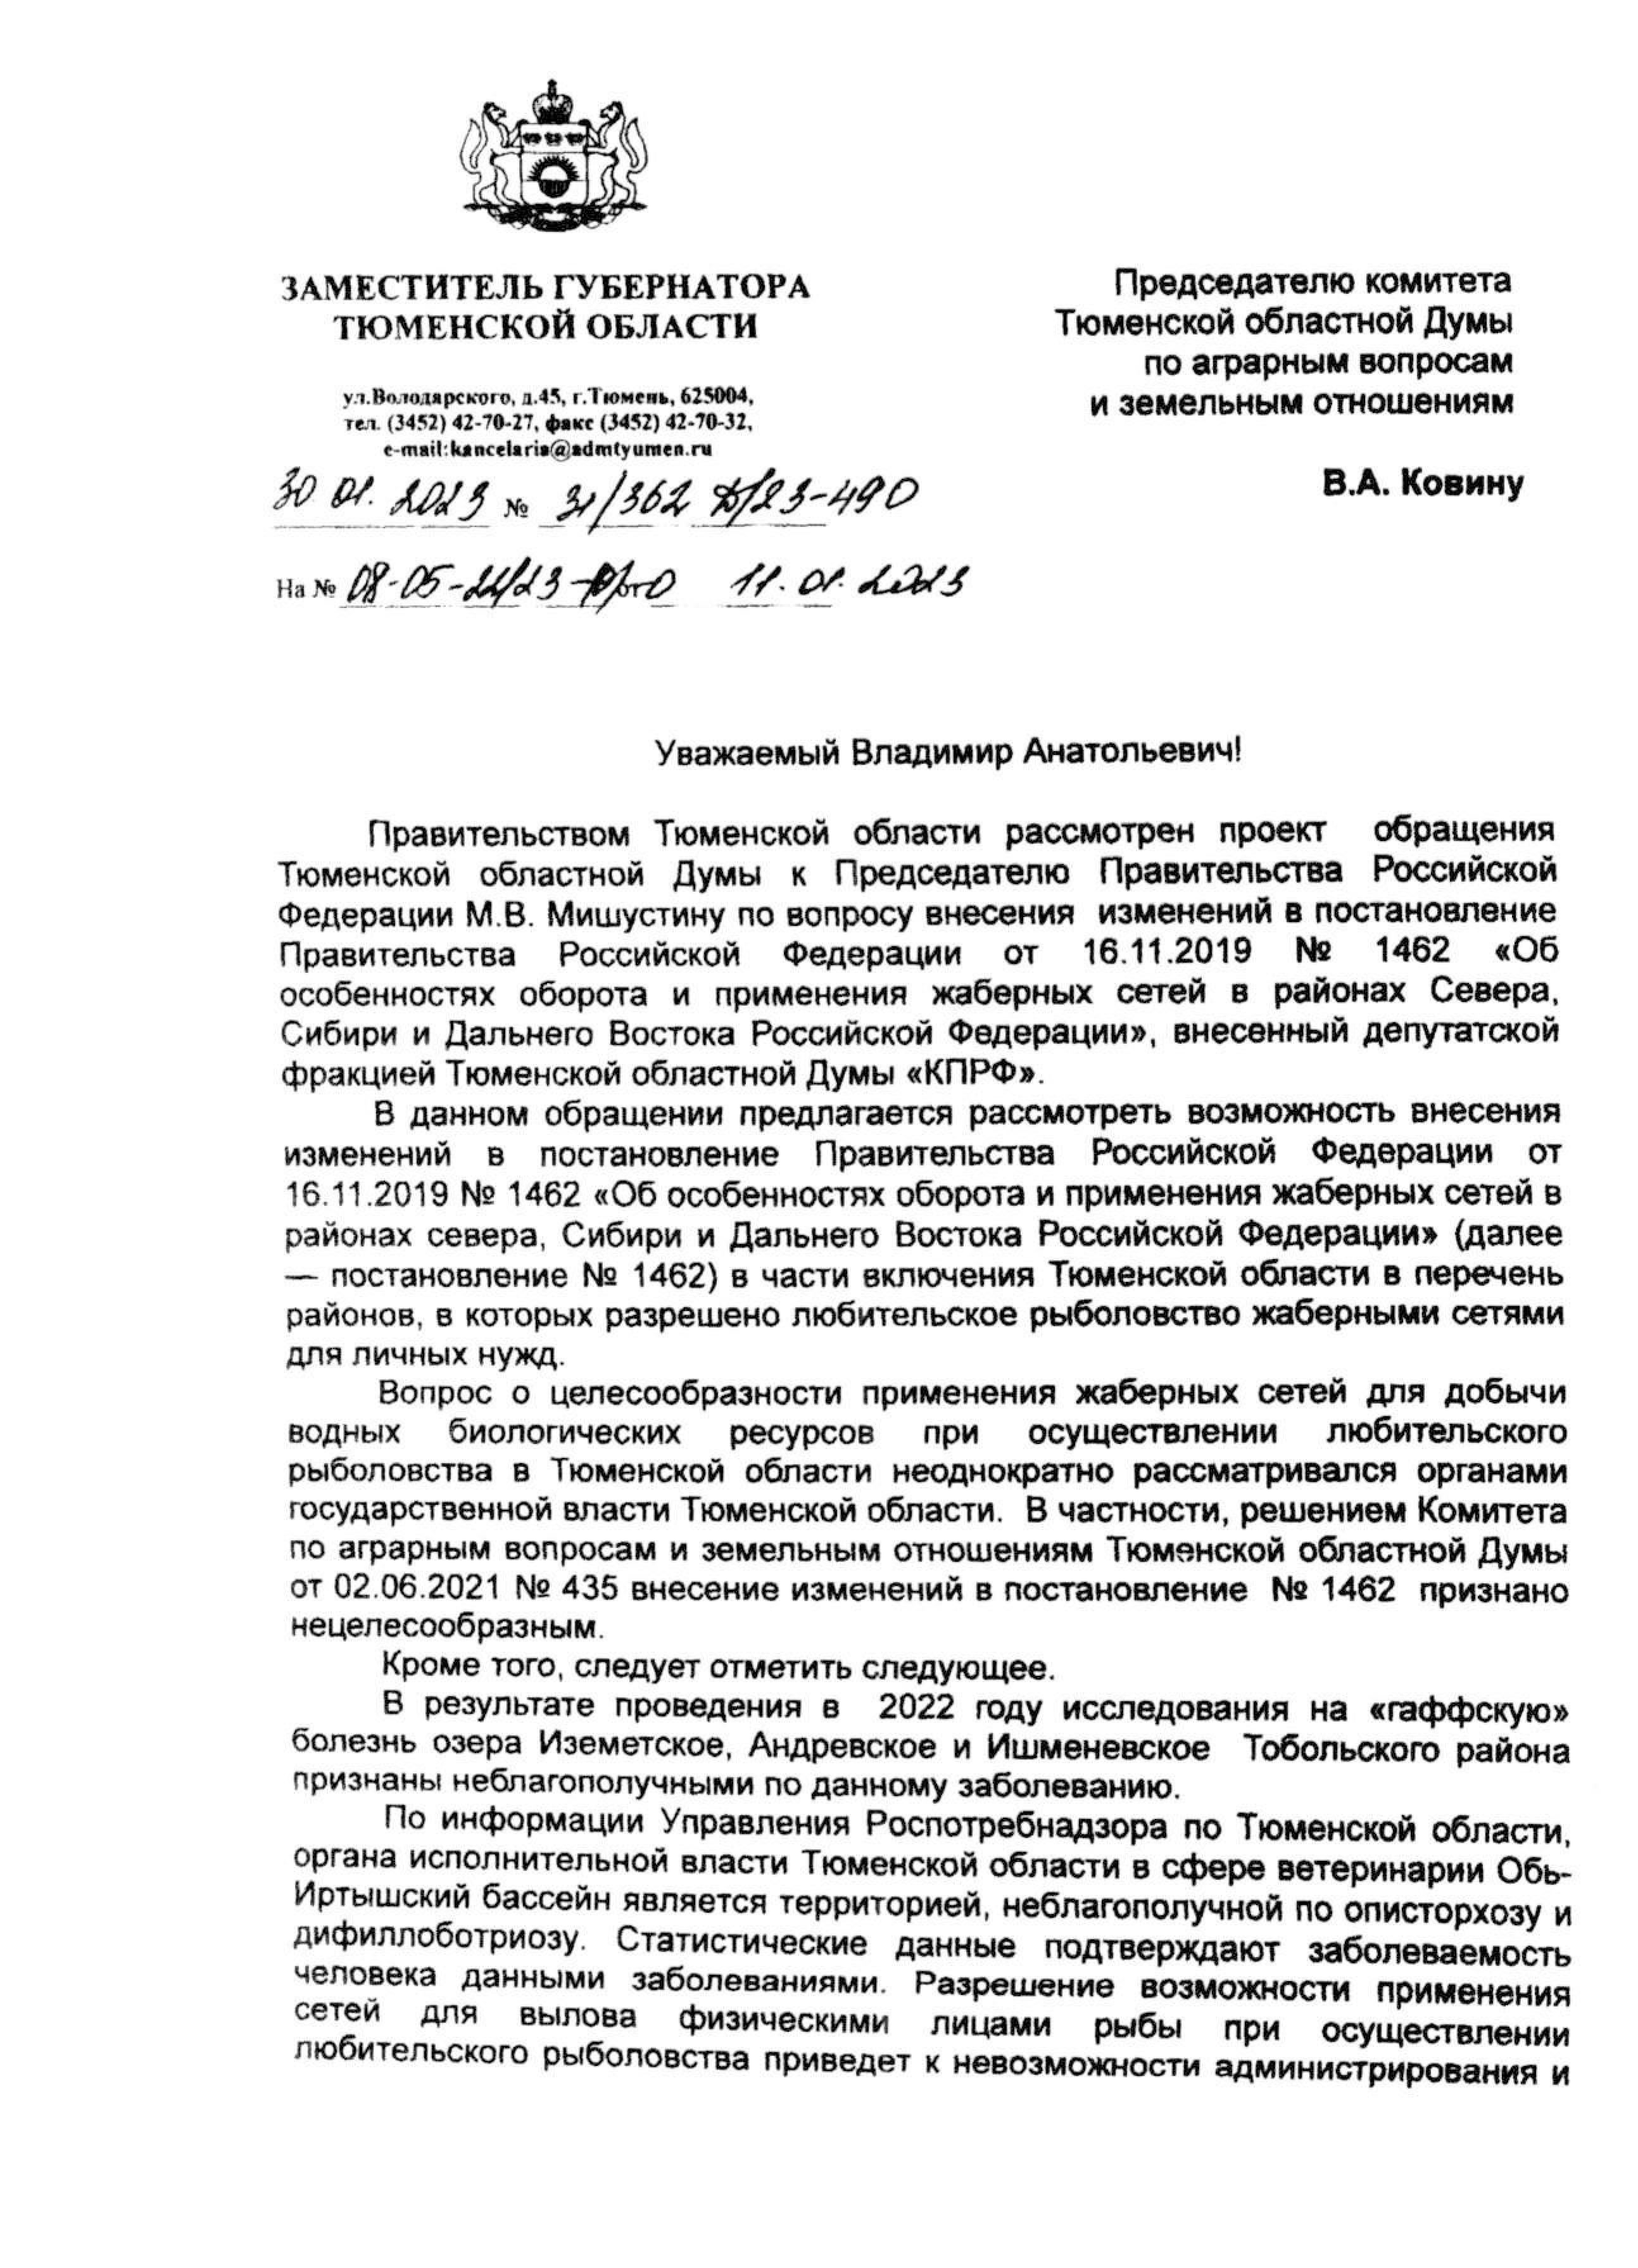 «Всему виной – описторхоз!». Как чиновники исключили Тюменскую область из состава Сибири, запретив вылов рыбы сетями